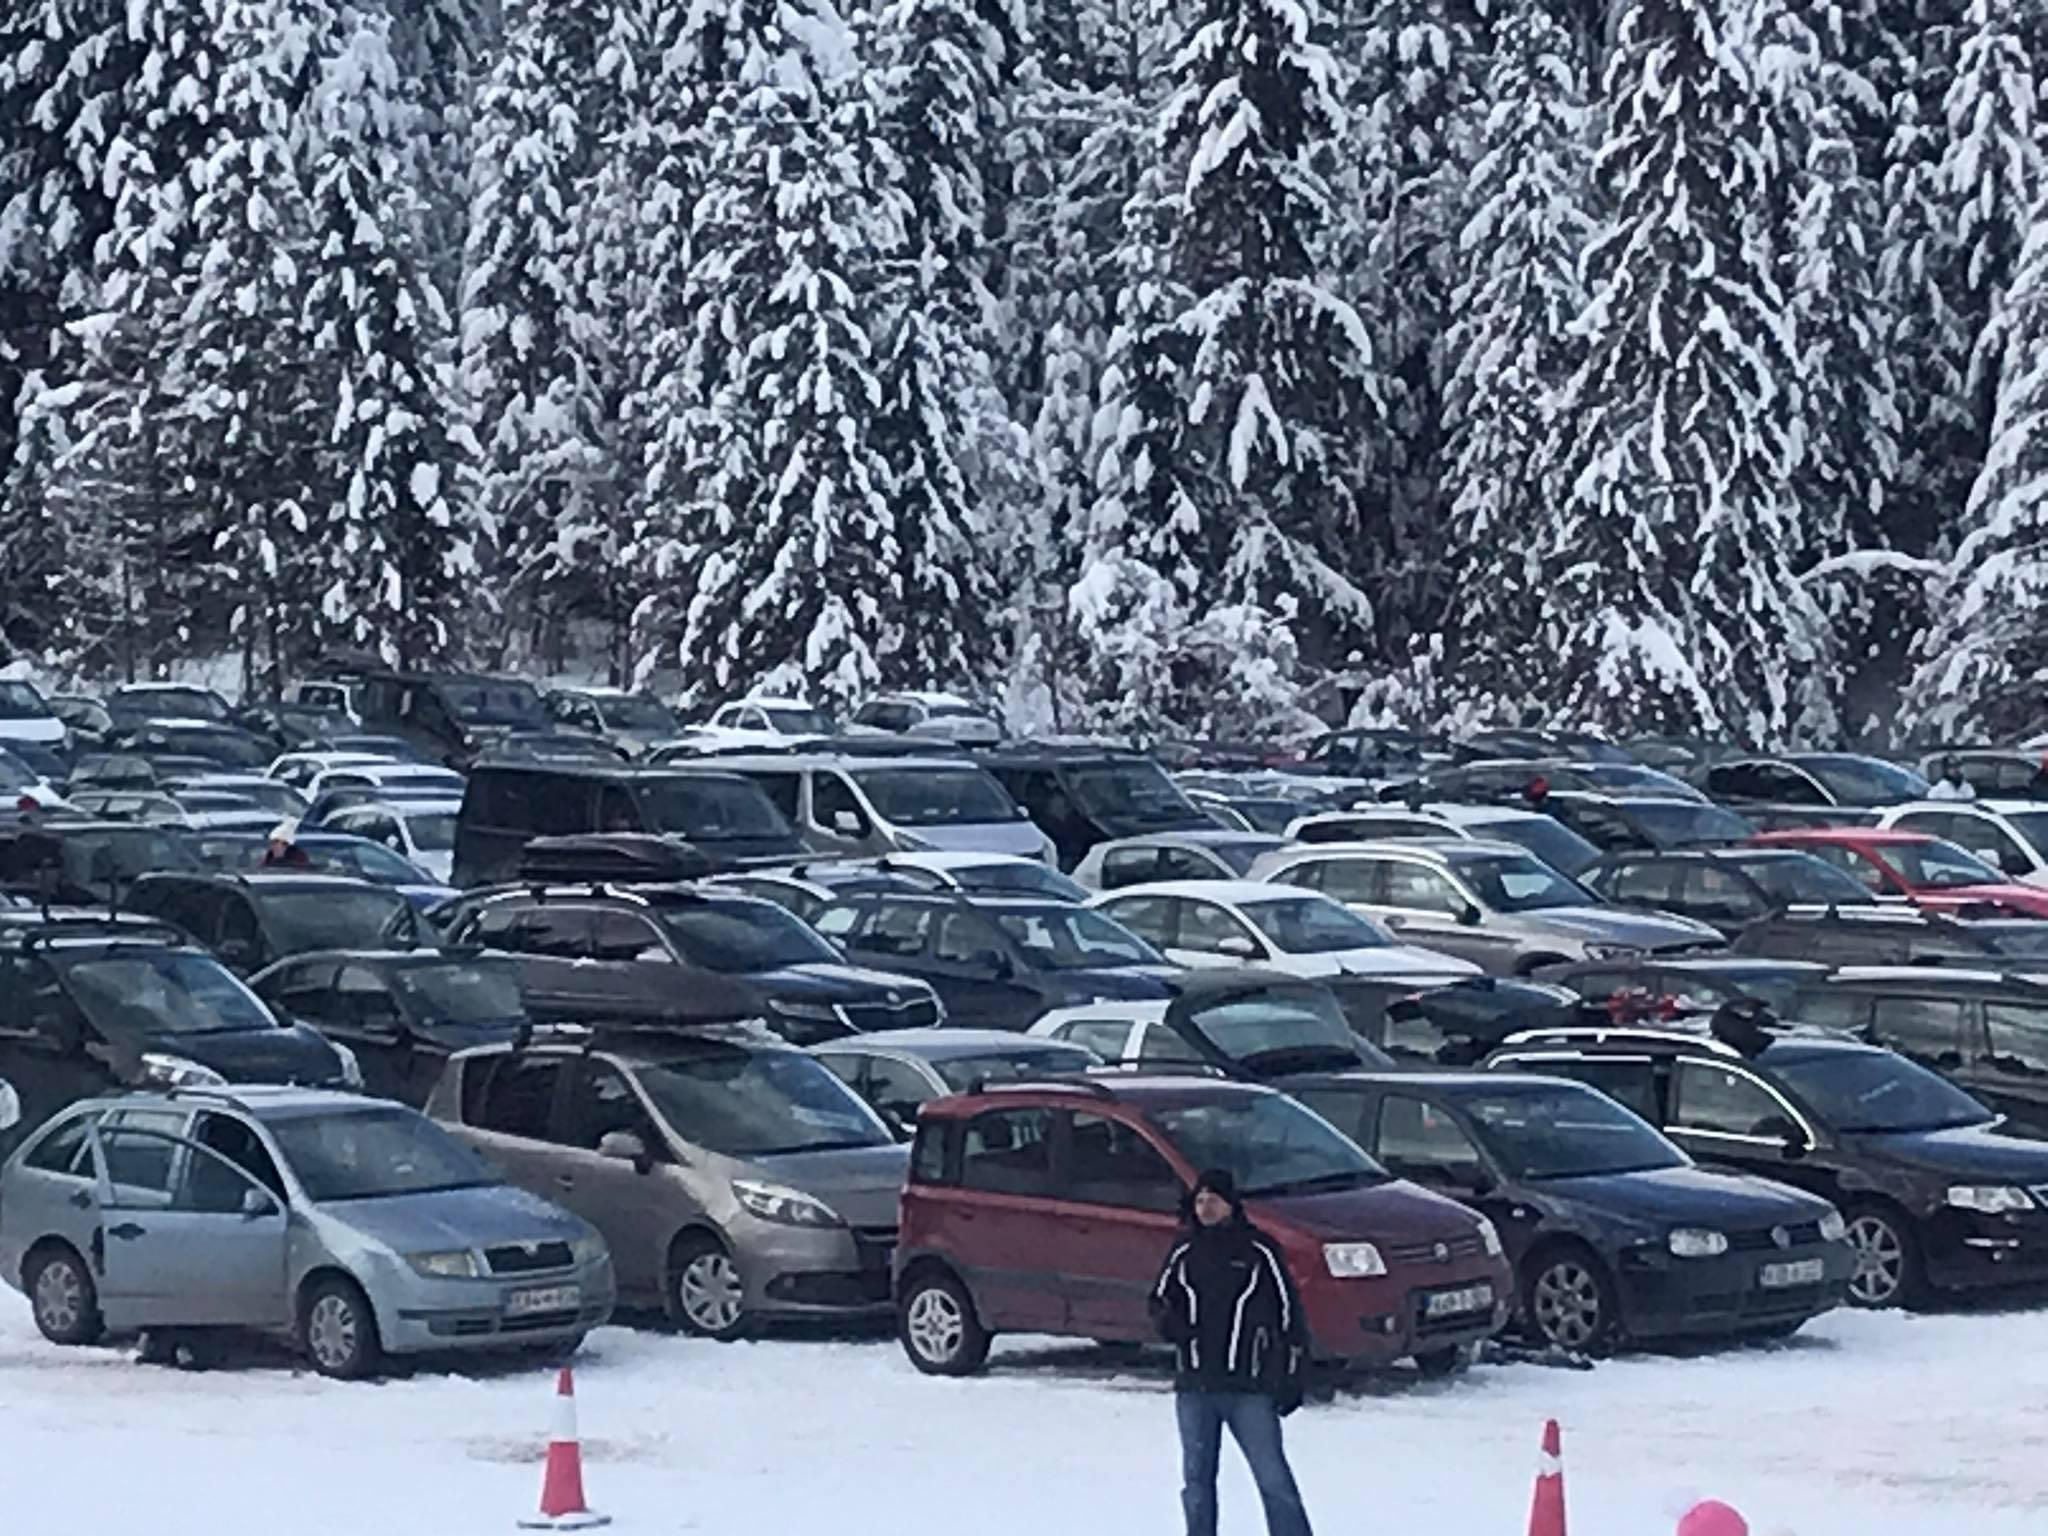 Zimska idila na Ravnoj planini: Na parkingu se traži mjesto više